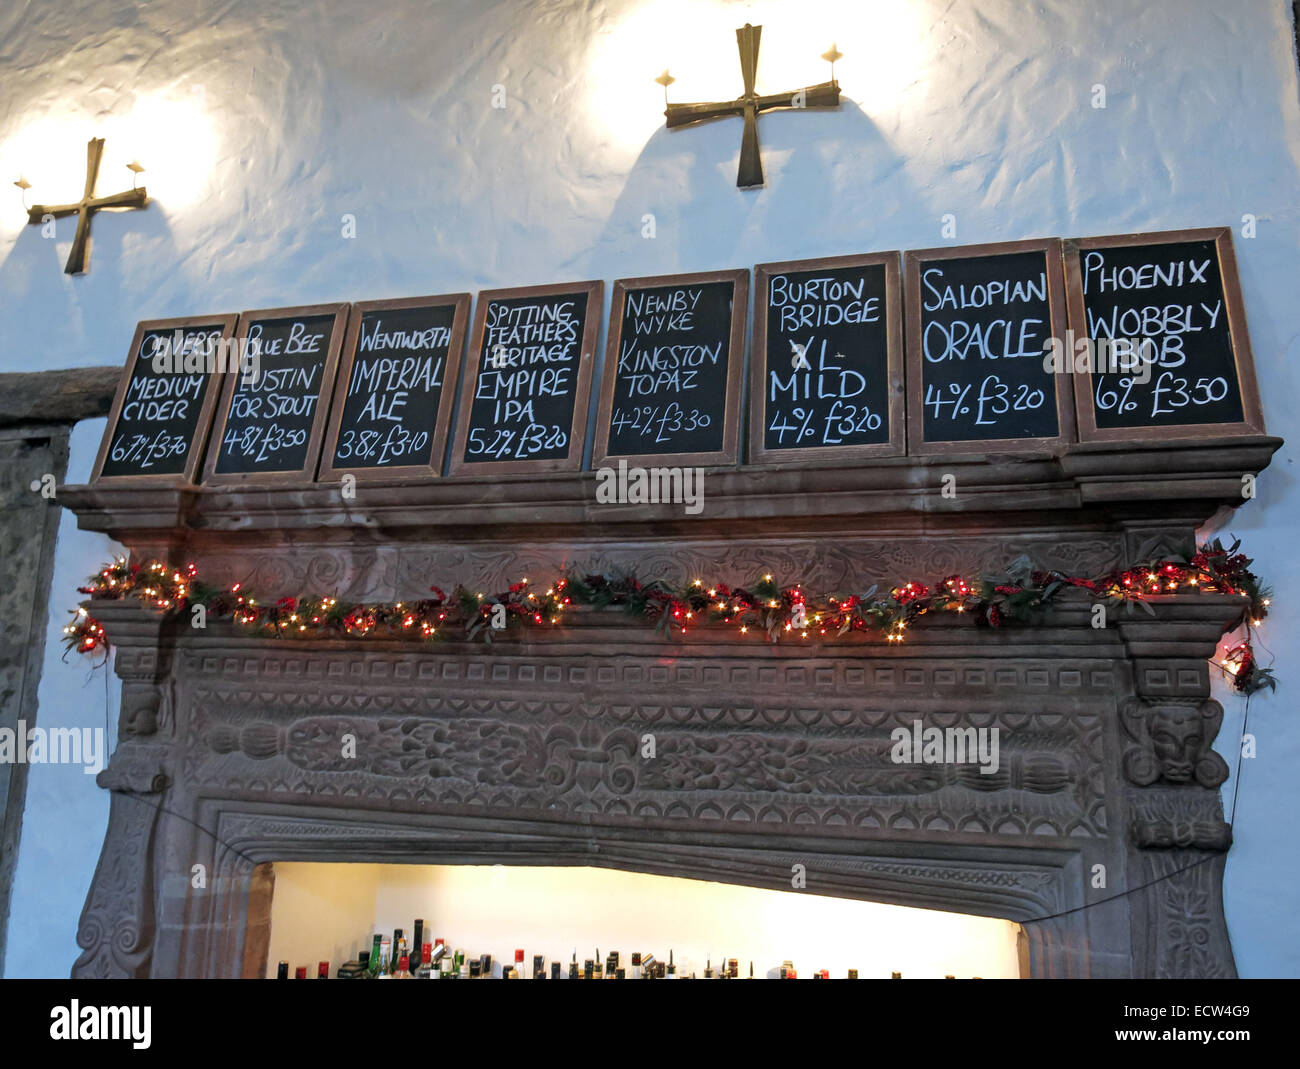 La Brasserie Touchez,liste de beers,pont inférieur,Chester Cheshire,ST,Angleterre,UK Banque D'Images